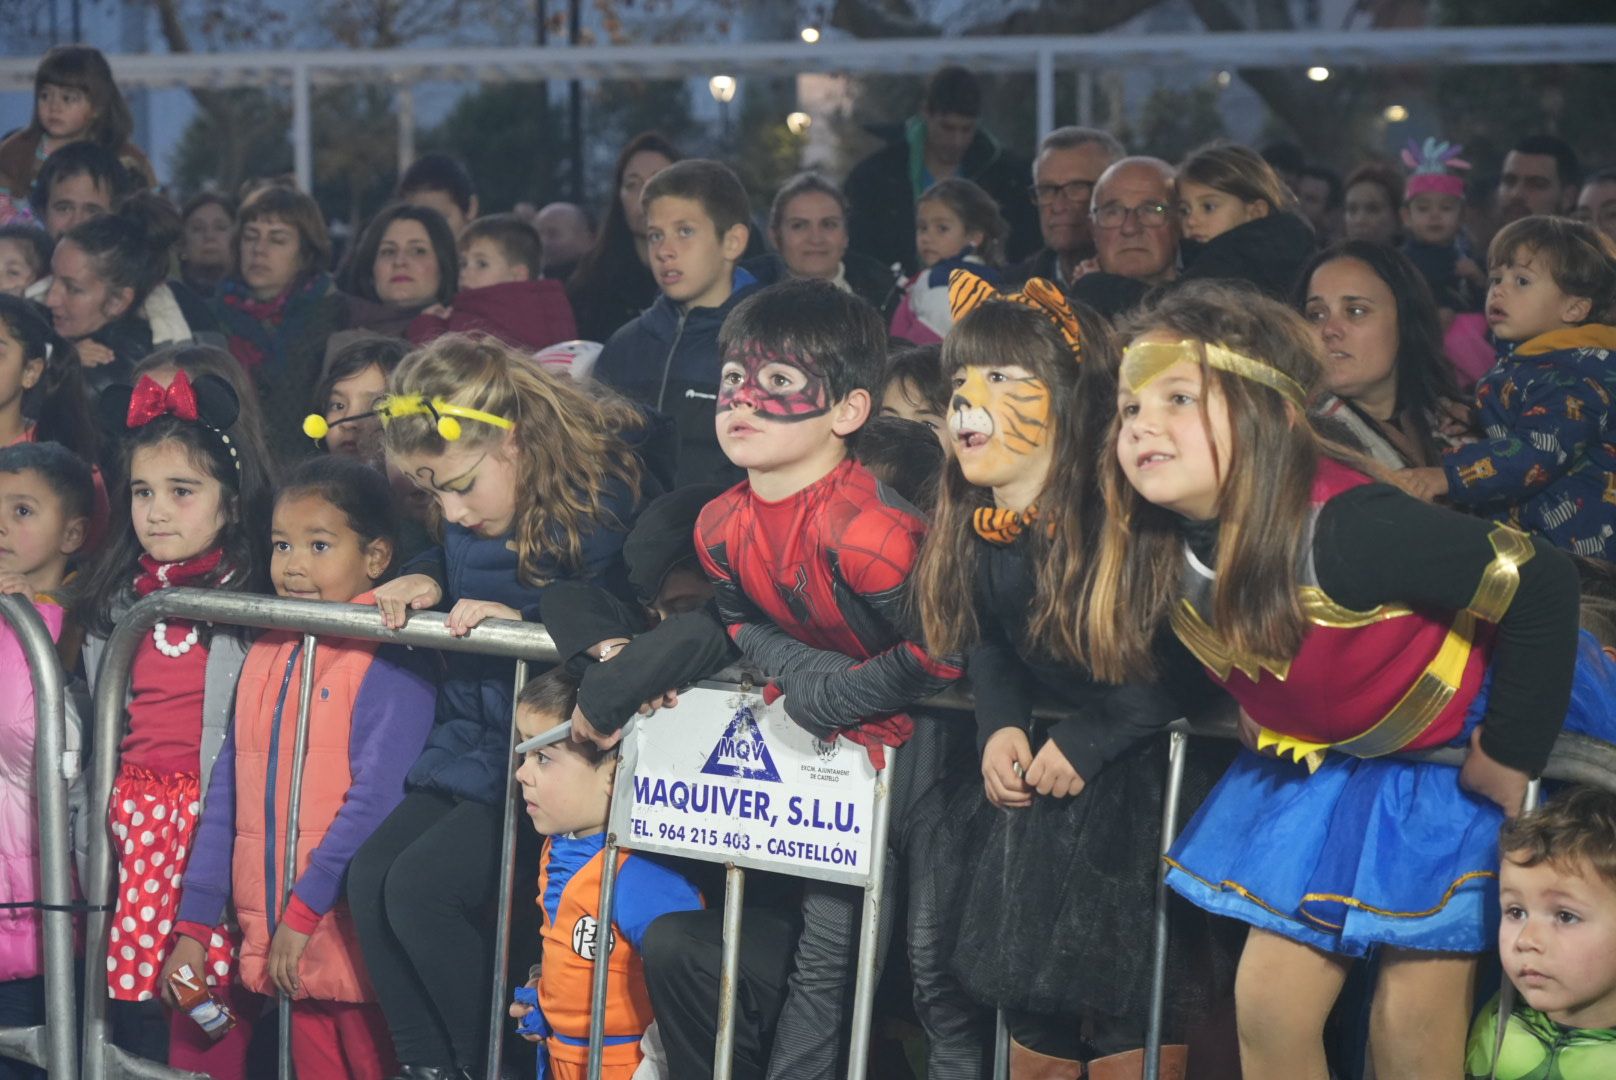 4 823 photos et images de Carnaval Enfant - Getty Images